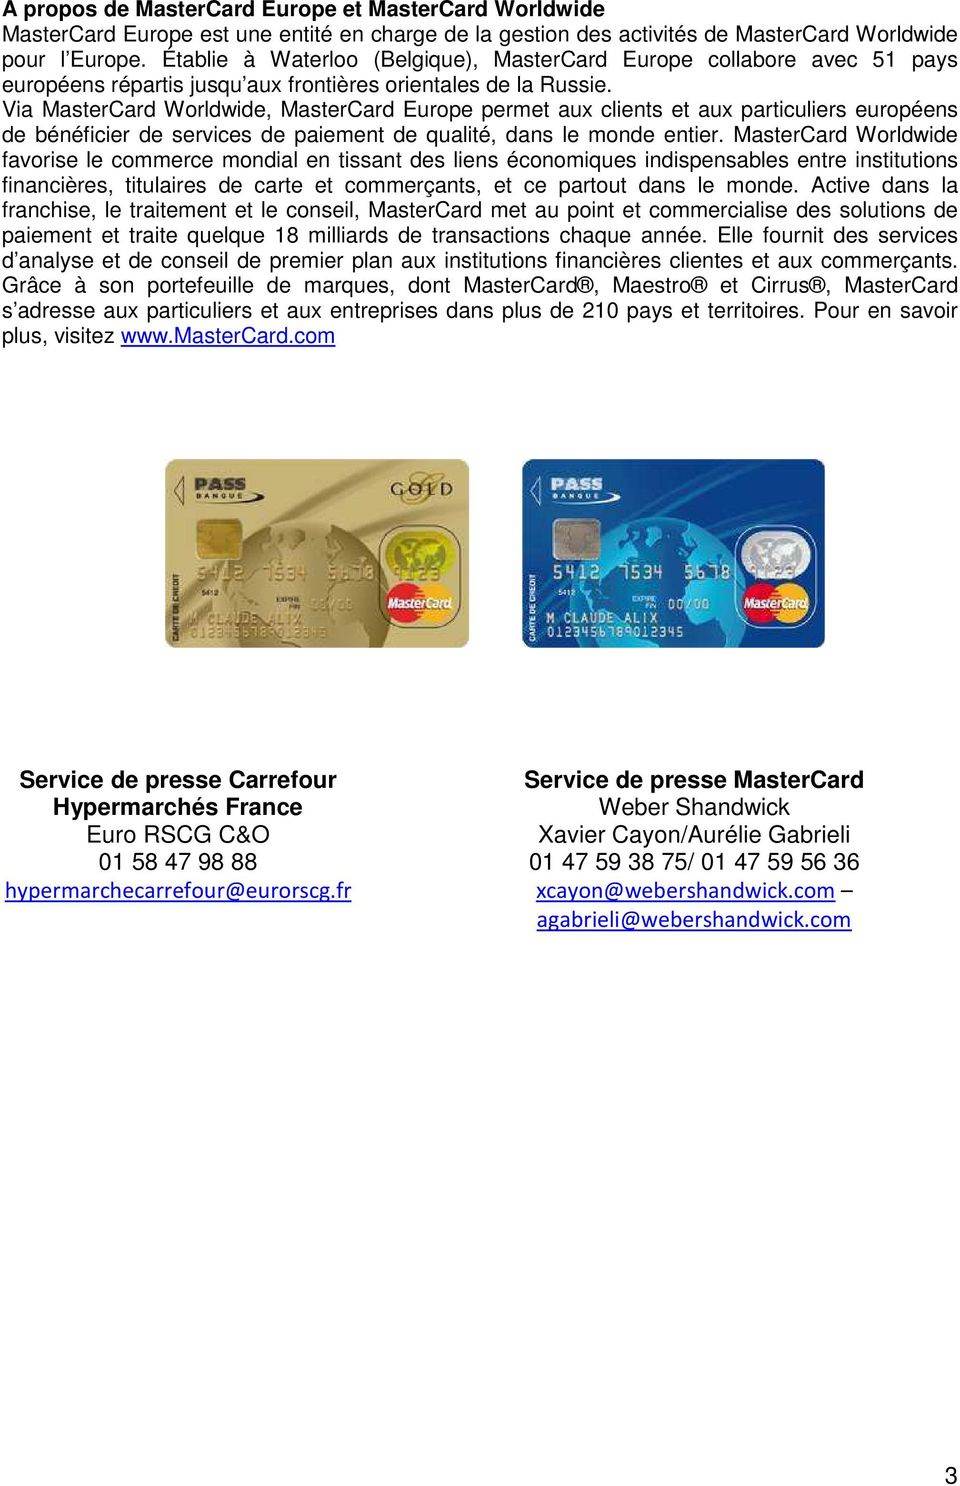 Via MasterCard Worldwide, MasterCard Europe permet aux clients et aux particuliers européens de bénéficier de services de paiement de qualité, dans le monde entier.